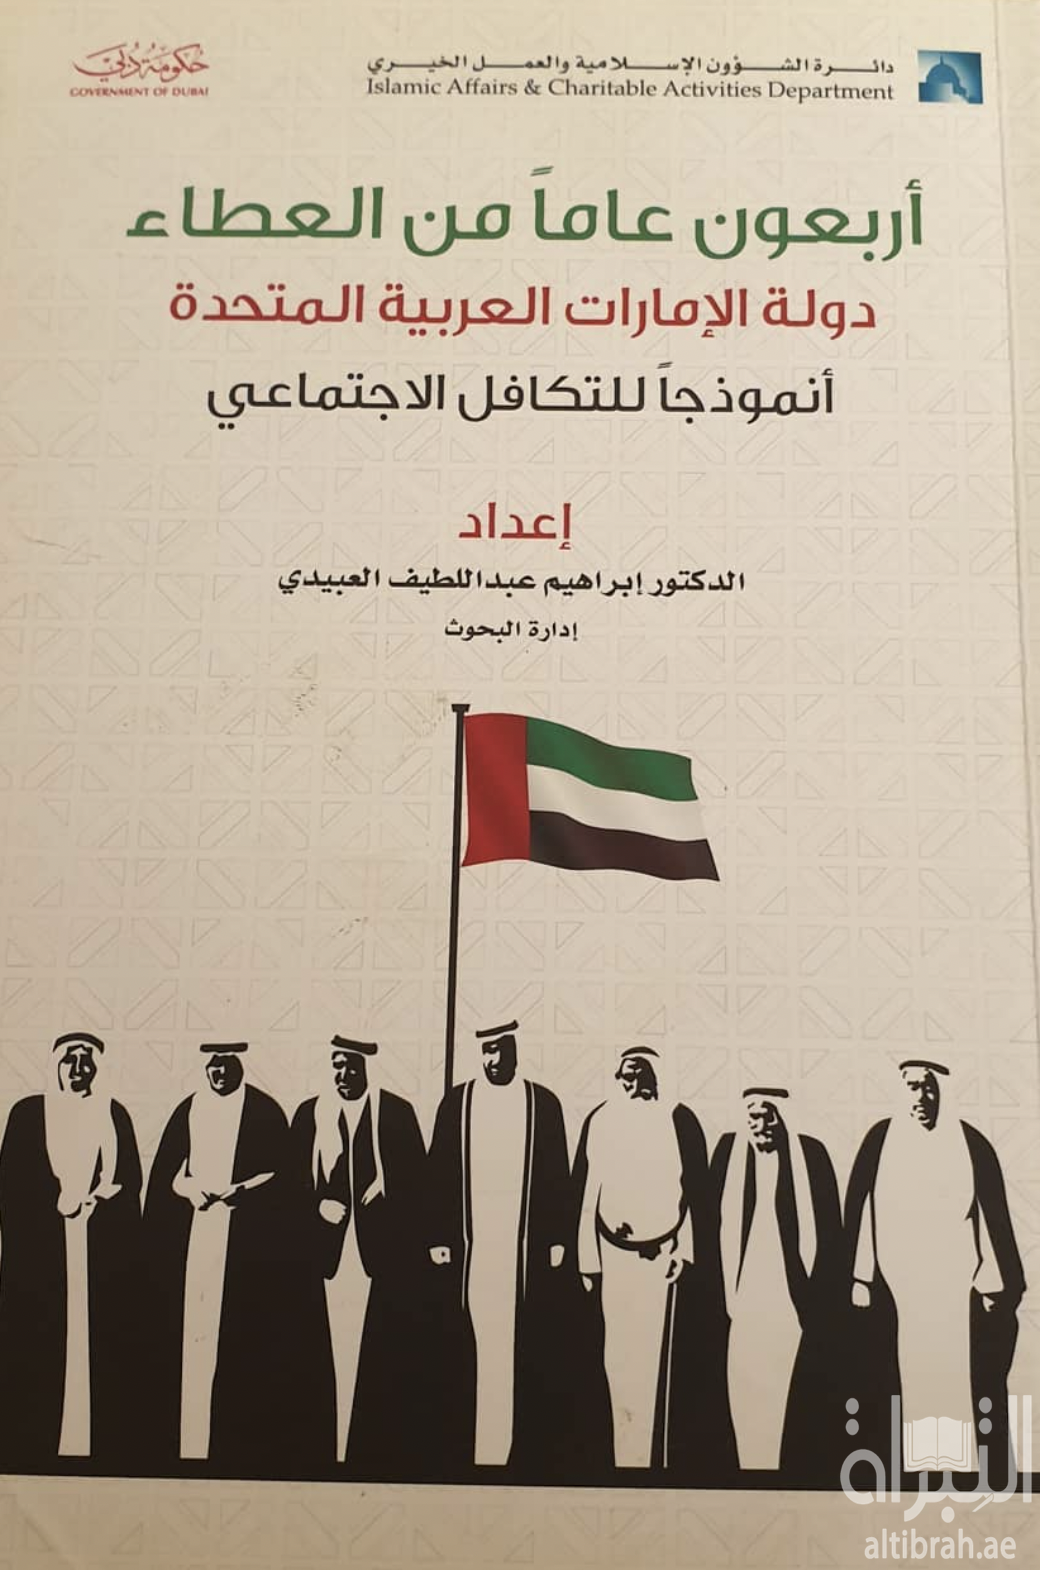 غلاف كتاب أربعون عاما من العطاء : دولة الإمارات العربية المتحدة أنموذجاً للتكافل الإجتماعي ، مع نبذة عن صندوق التكافل الإجتماعي للعاملين بدائرة الشؤون الإسلامية والعمل الخيري